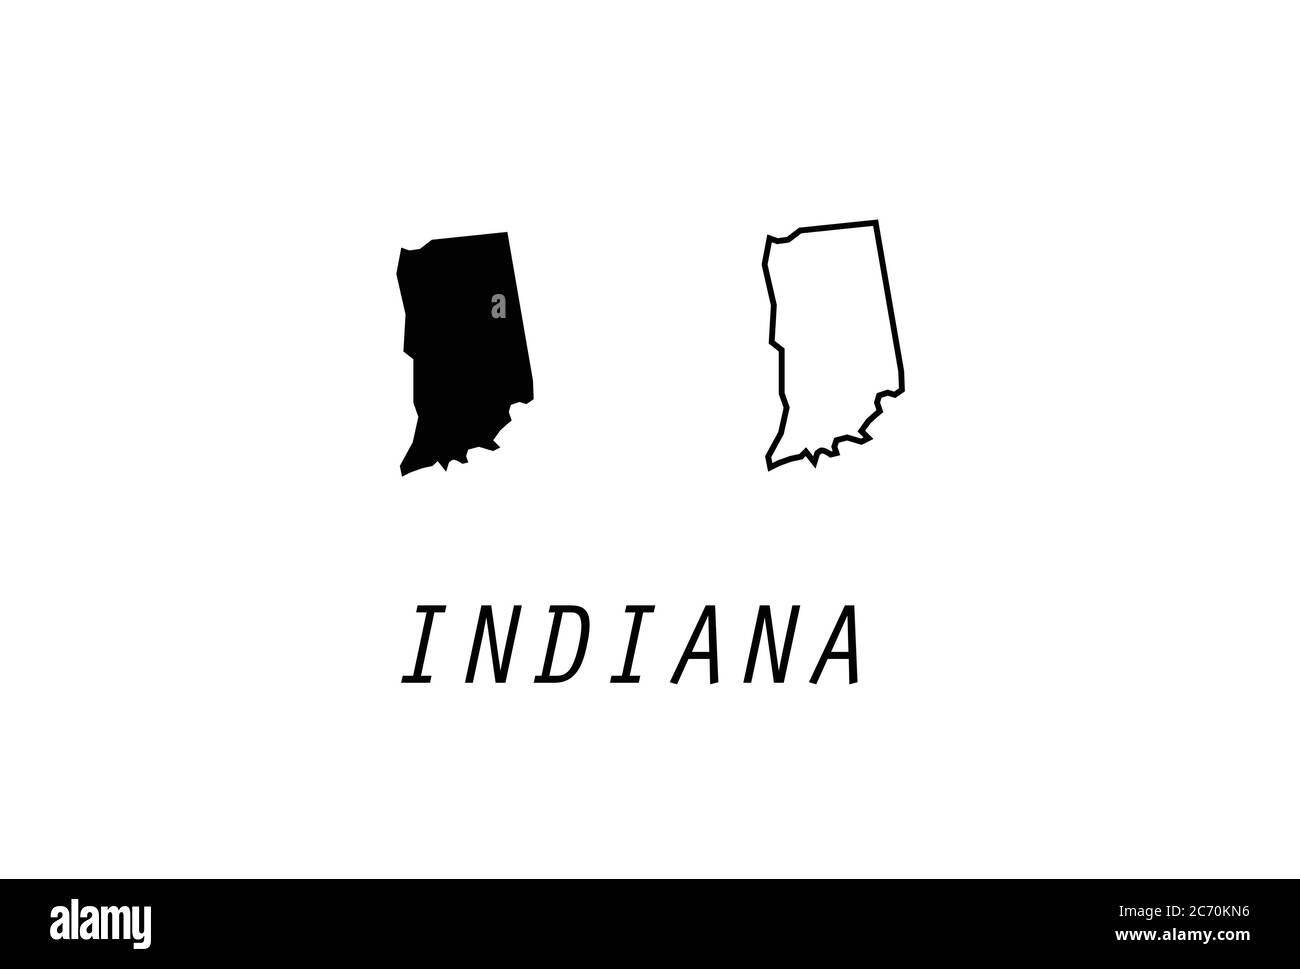 Illustrazione del vettore dello stato degli Stati Uniti con il profilo della mappa dell'Indiana Illustrazione Vettoriale